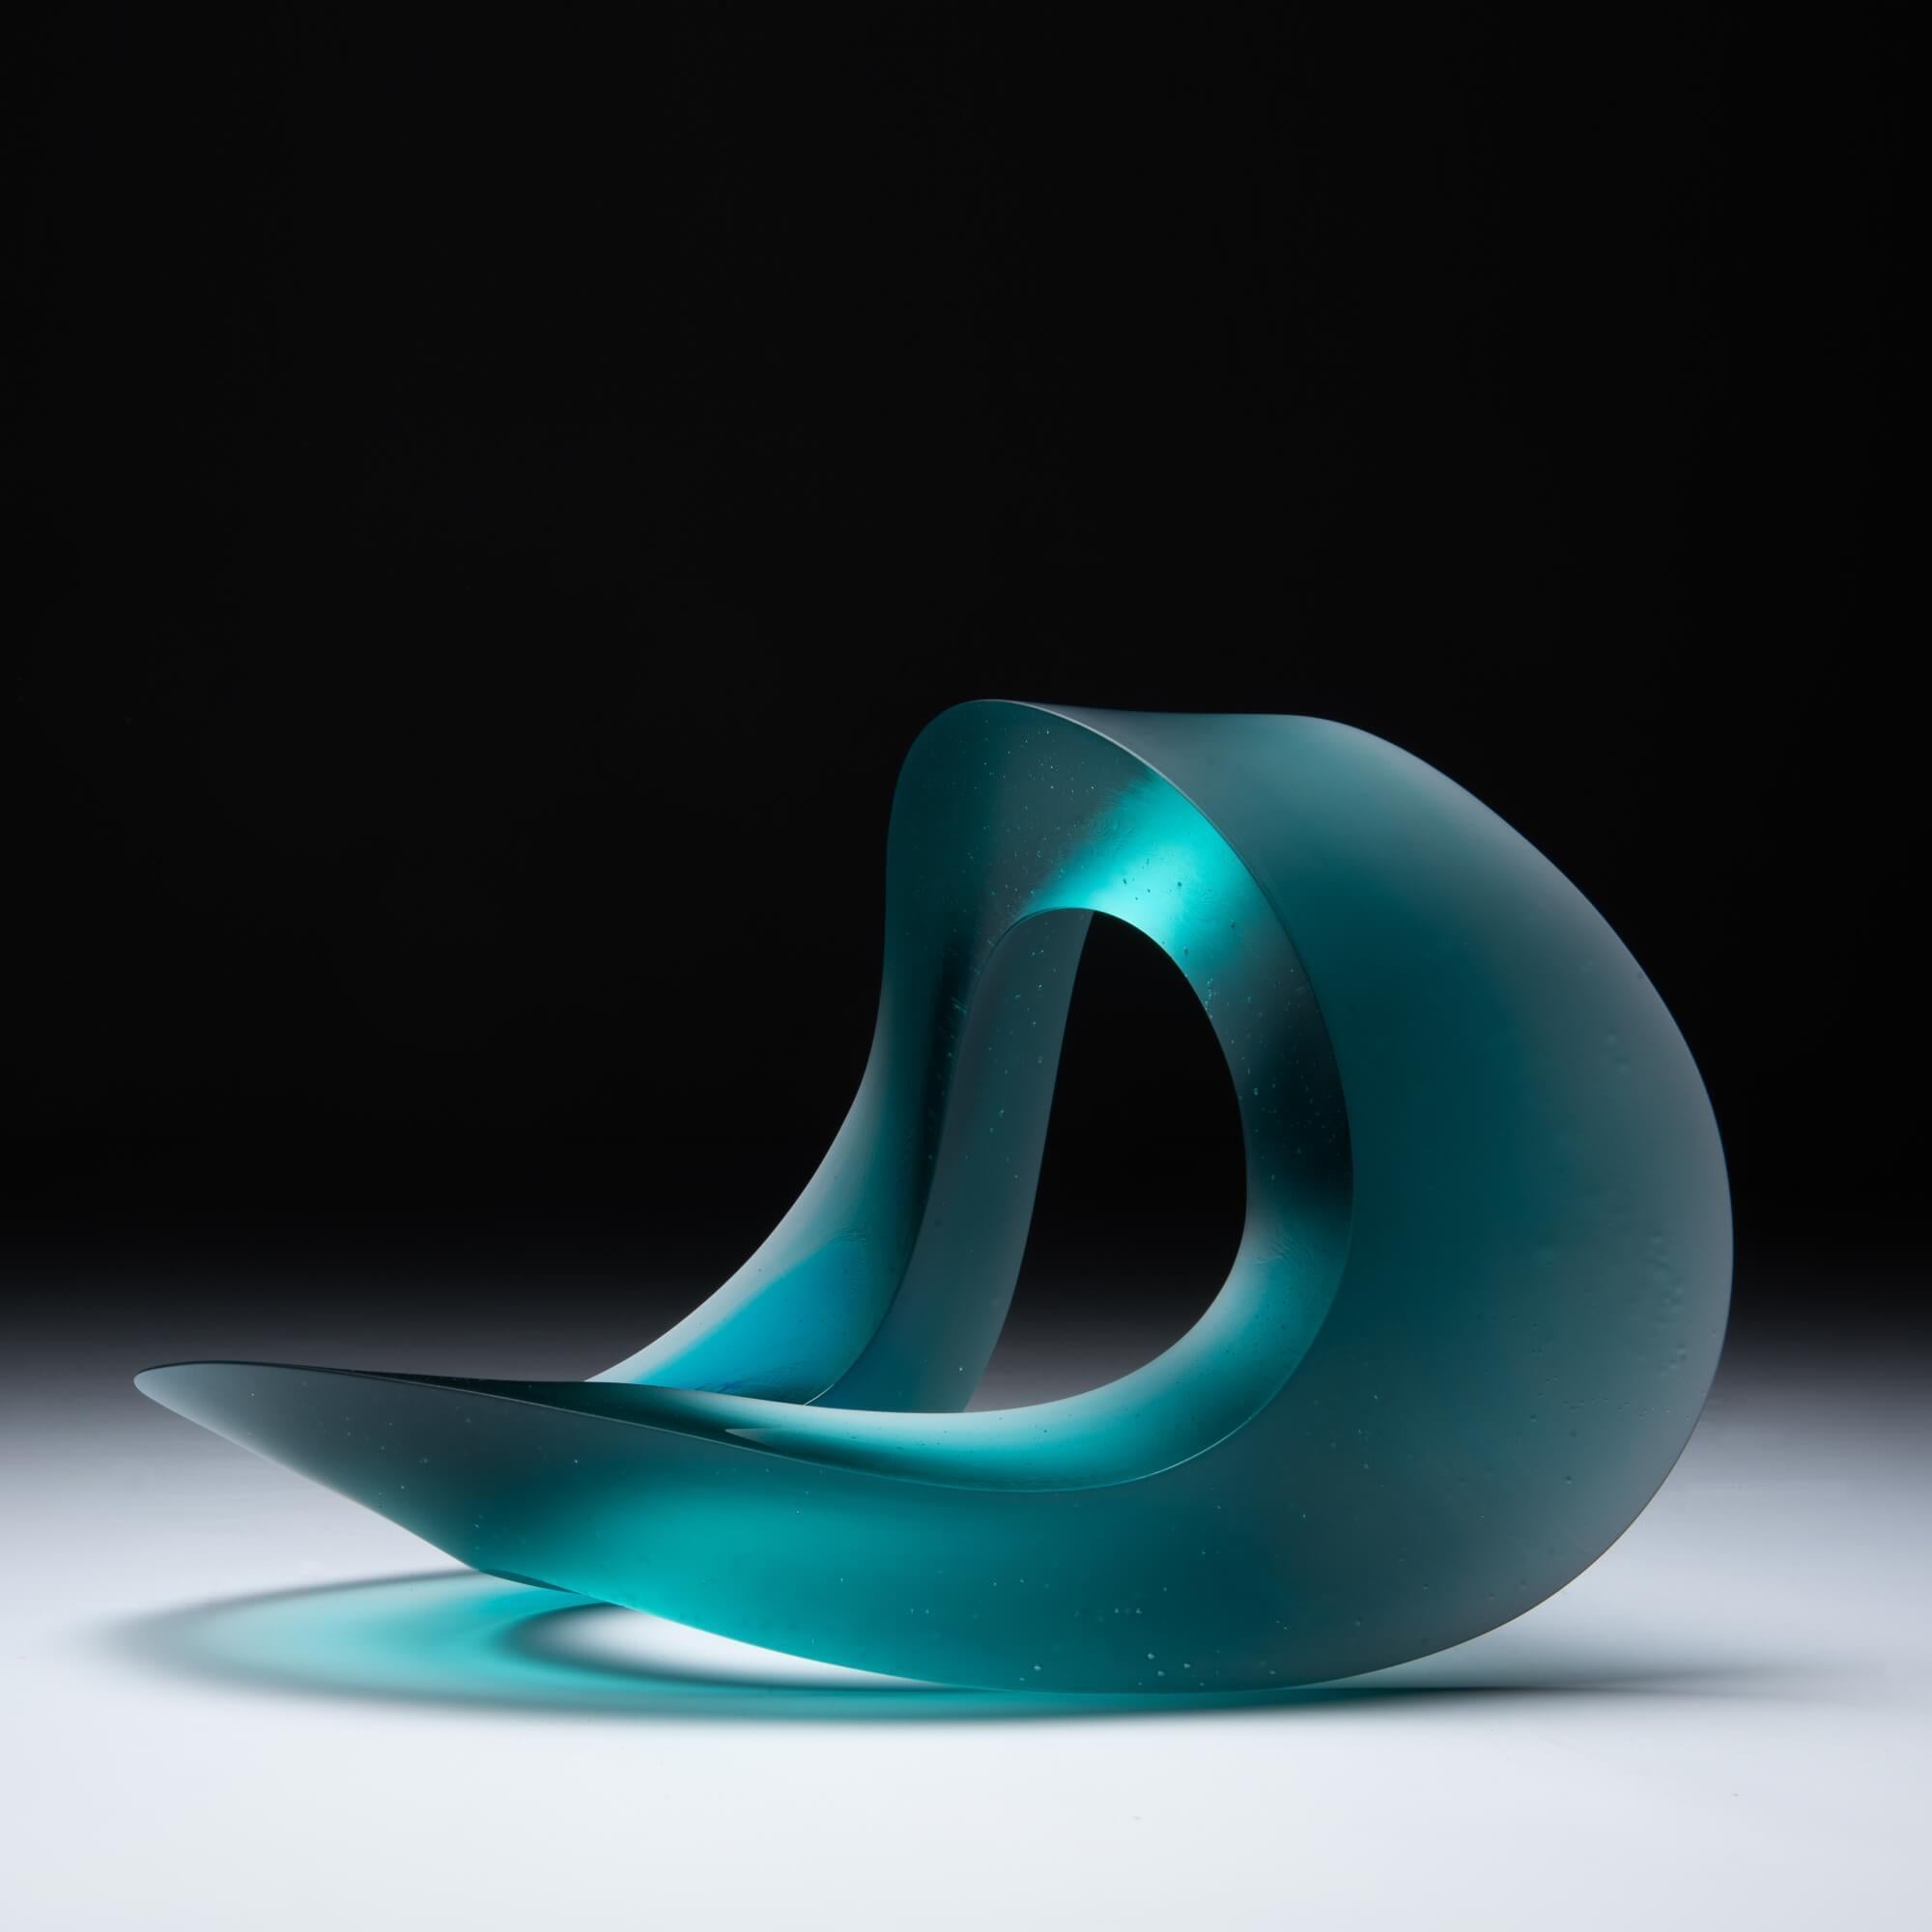 Créée à partir de verre coulé massif, l'intrigante sculpture Halycon de Heike Brachlow est basée sur un concept appelé D-form, une forme tridimensionnelle créée en joignant les bords de deux formes plates ayant la même longueur de périmètre.